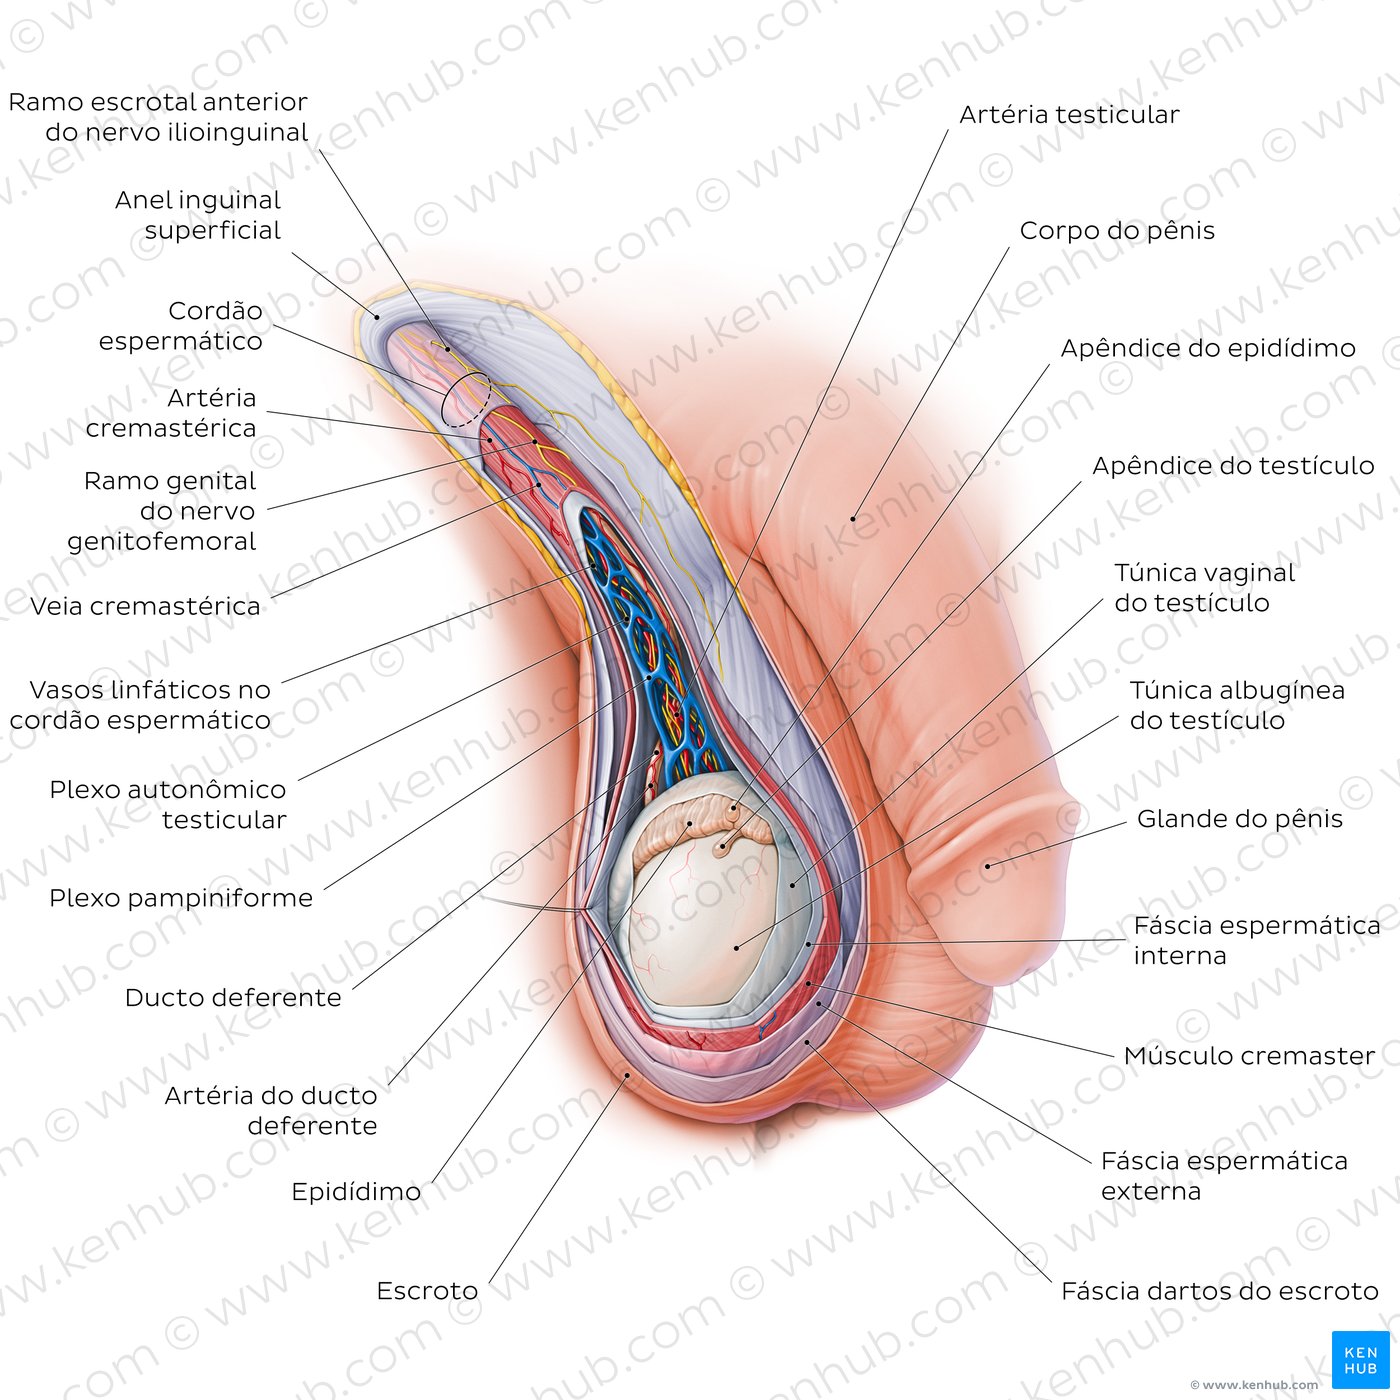 Anatomia do escroto e do funículo espermático